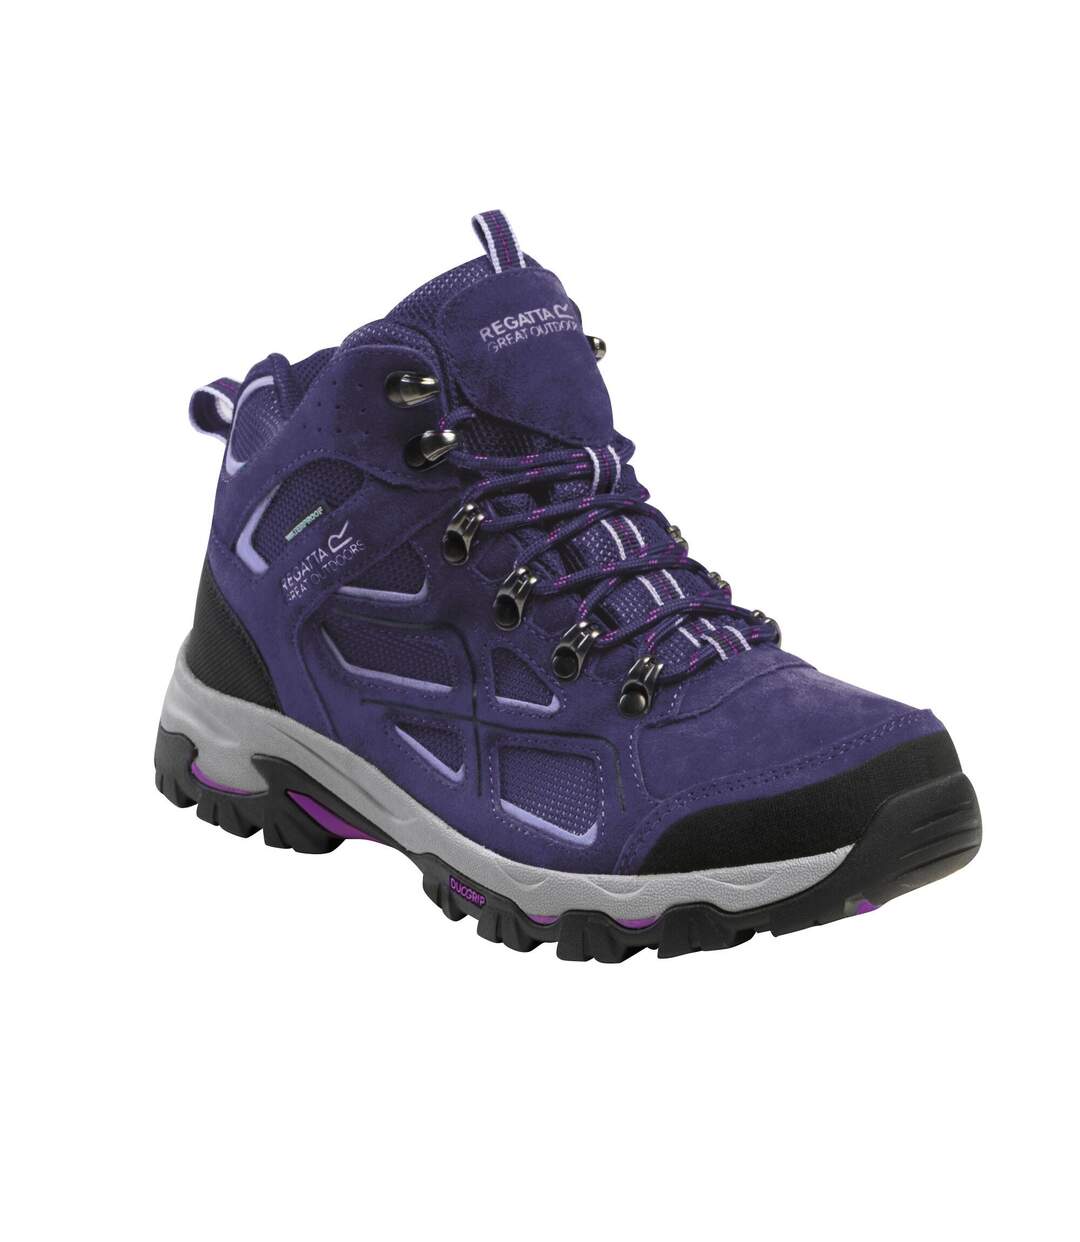 Regatta Womens/Ladies Walking Boots (Midnight/Lilac Bloom) - UTRG6346